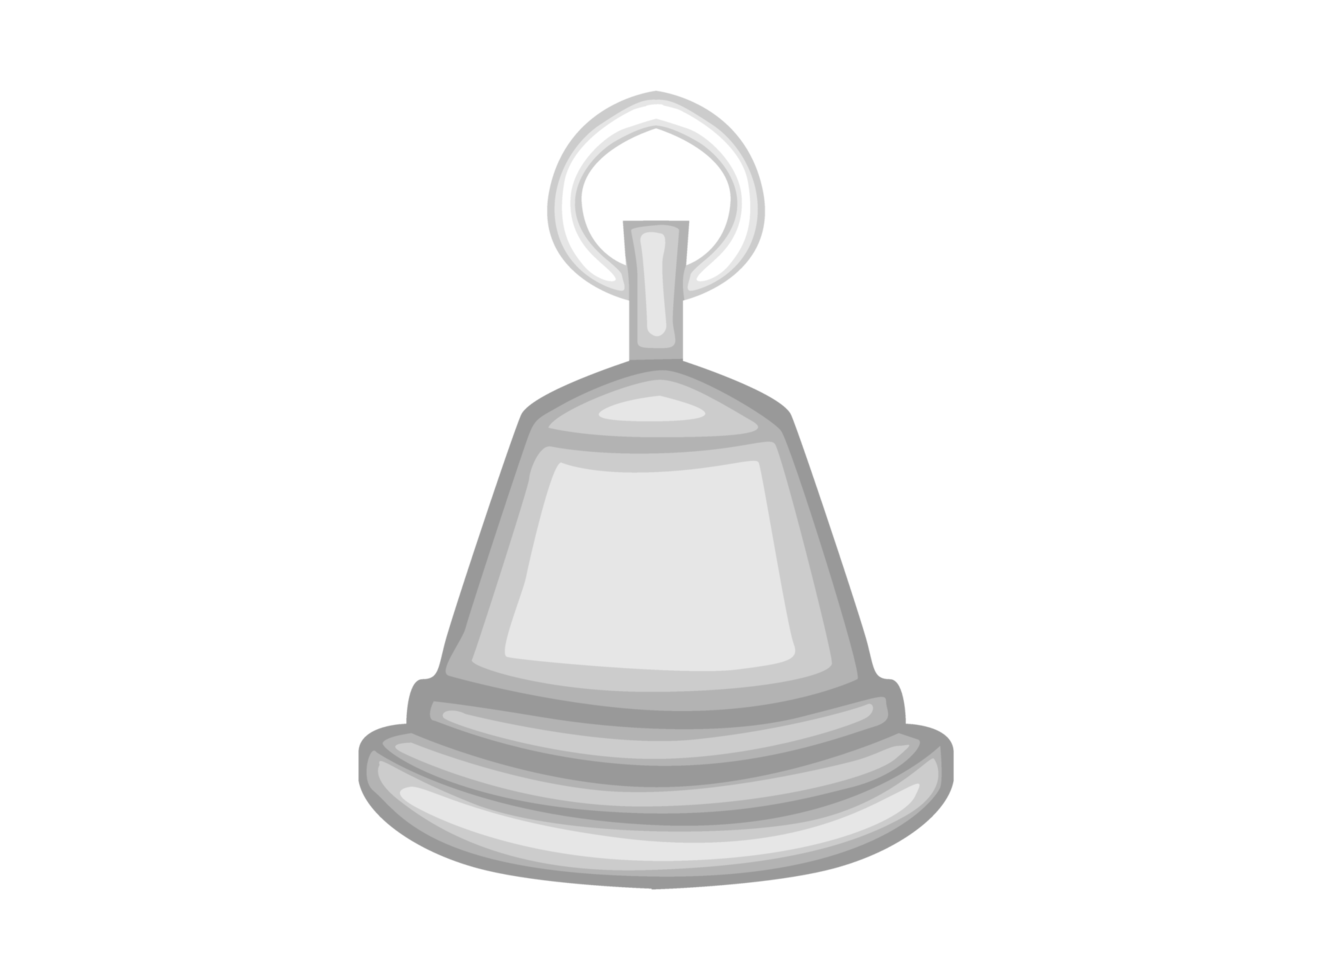 ilustración de campana de color plateado png